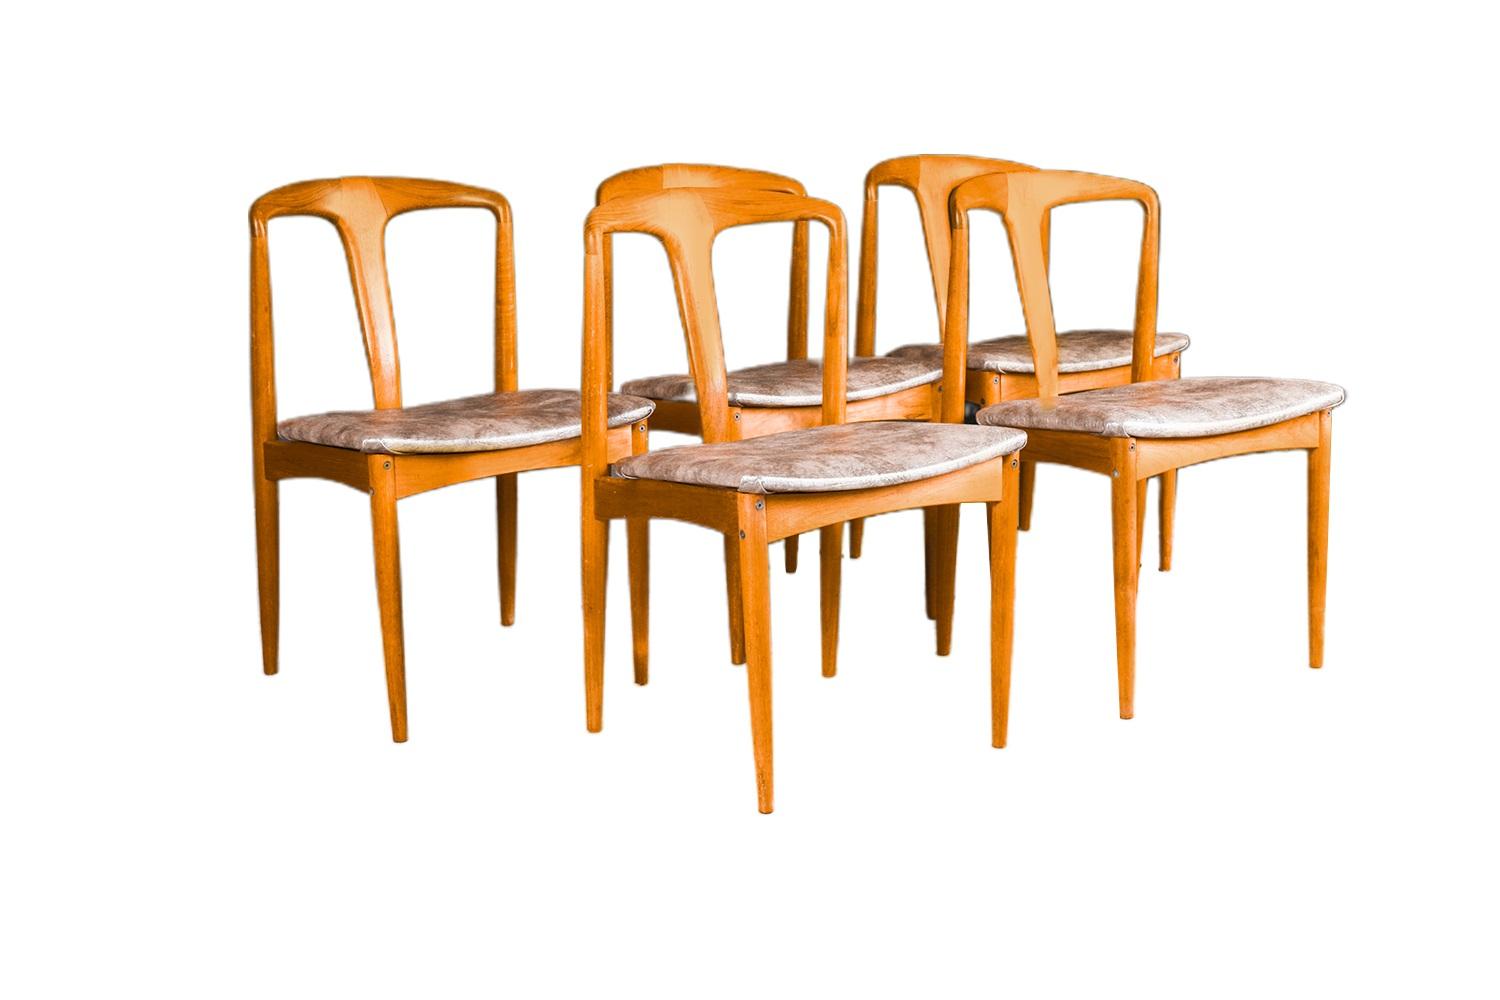 Ensemble de 5 chaises de salle à manger 'Juliane' en teck, fabriquées au Danemark par le célèbre designer Johannes Andersen pour Uldum Møbelfabrik, vers les années 1960. Superbement fabriqués dans de riches cadres en teck massif, on remarque les